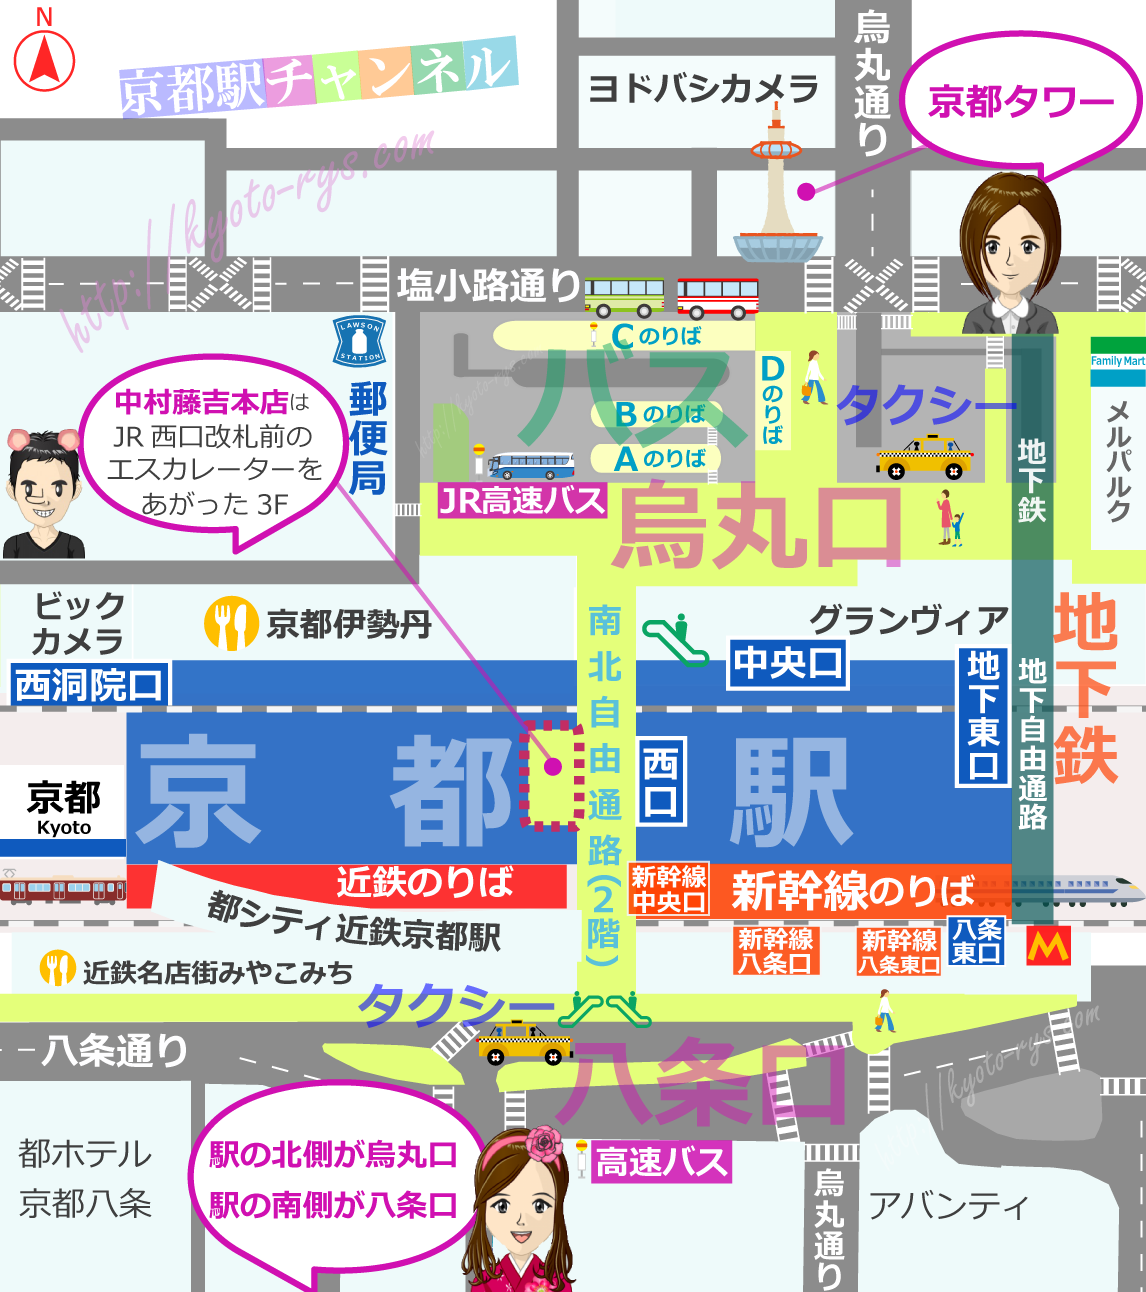 中村藤吉本店と京都駅のマップ